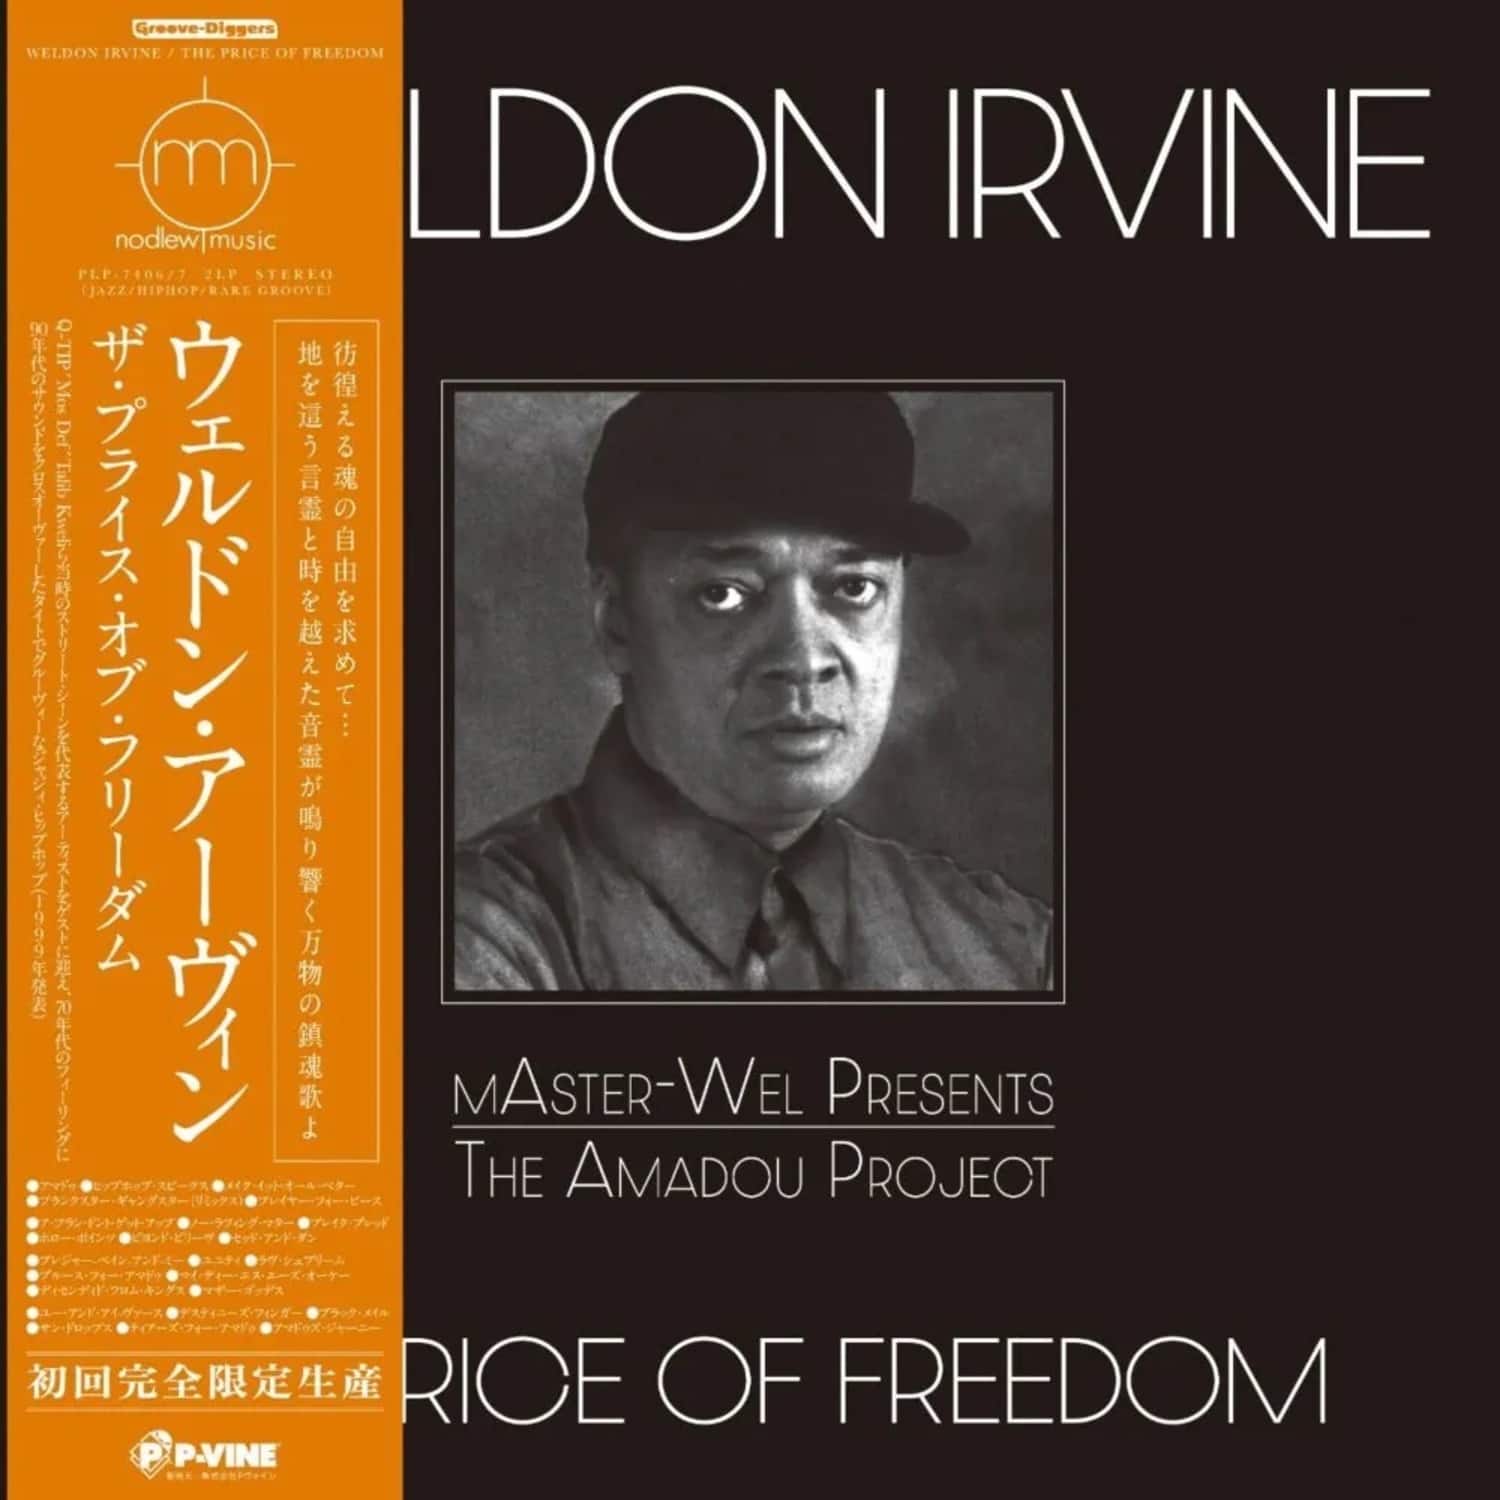 Weldon Irvine - THE PRICE OF FREEDOM 